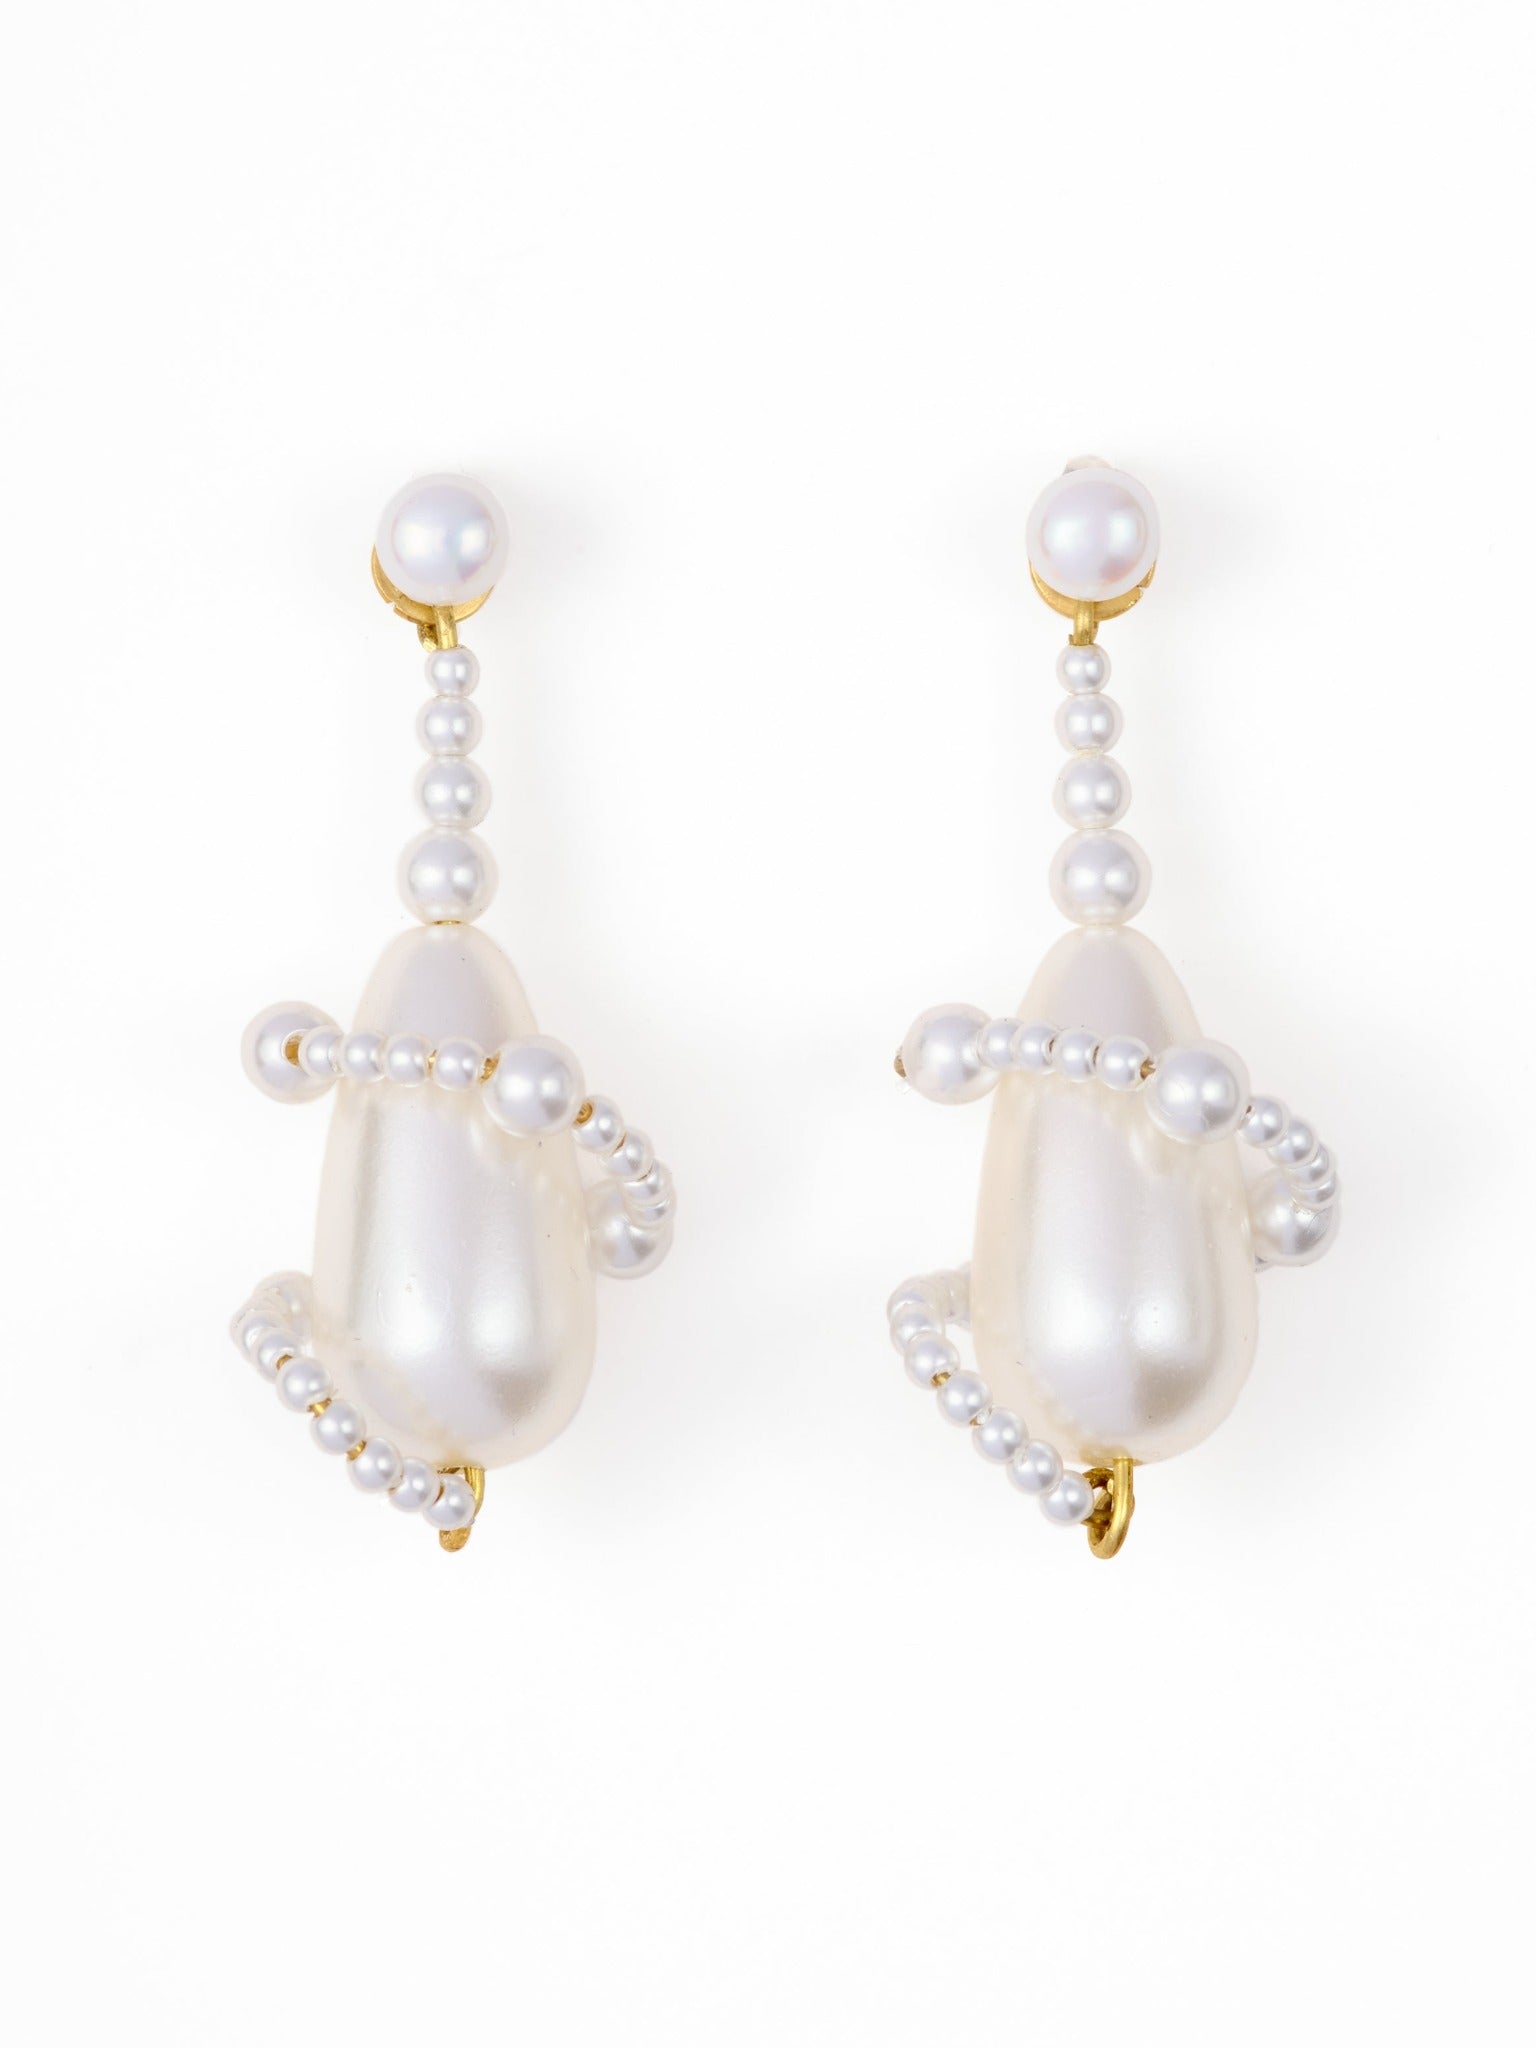 The Pearl Orb Earrings